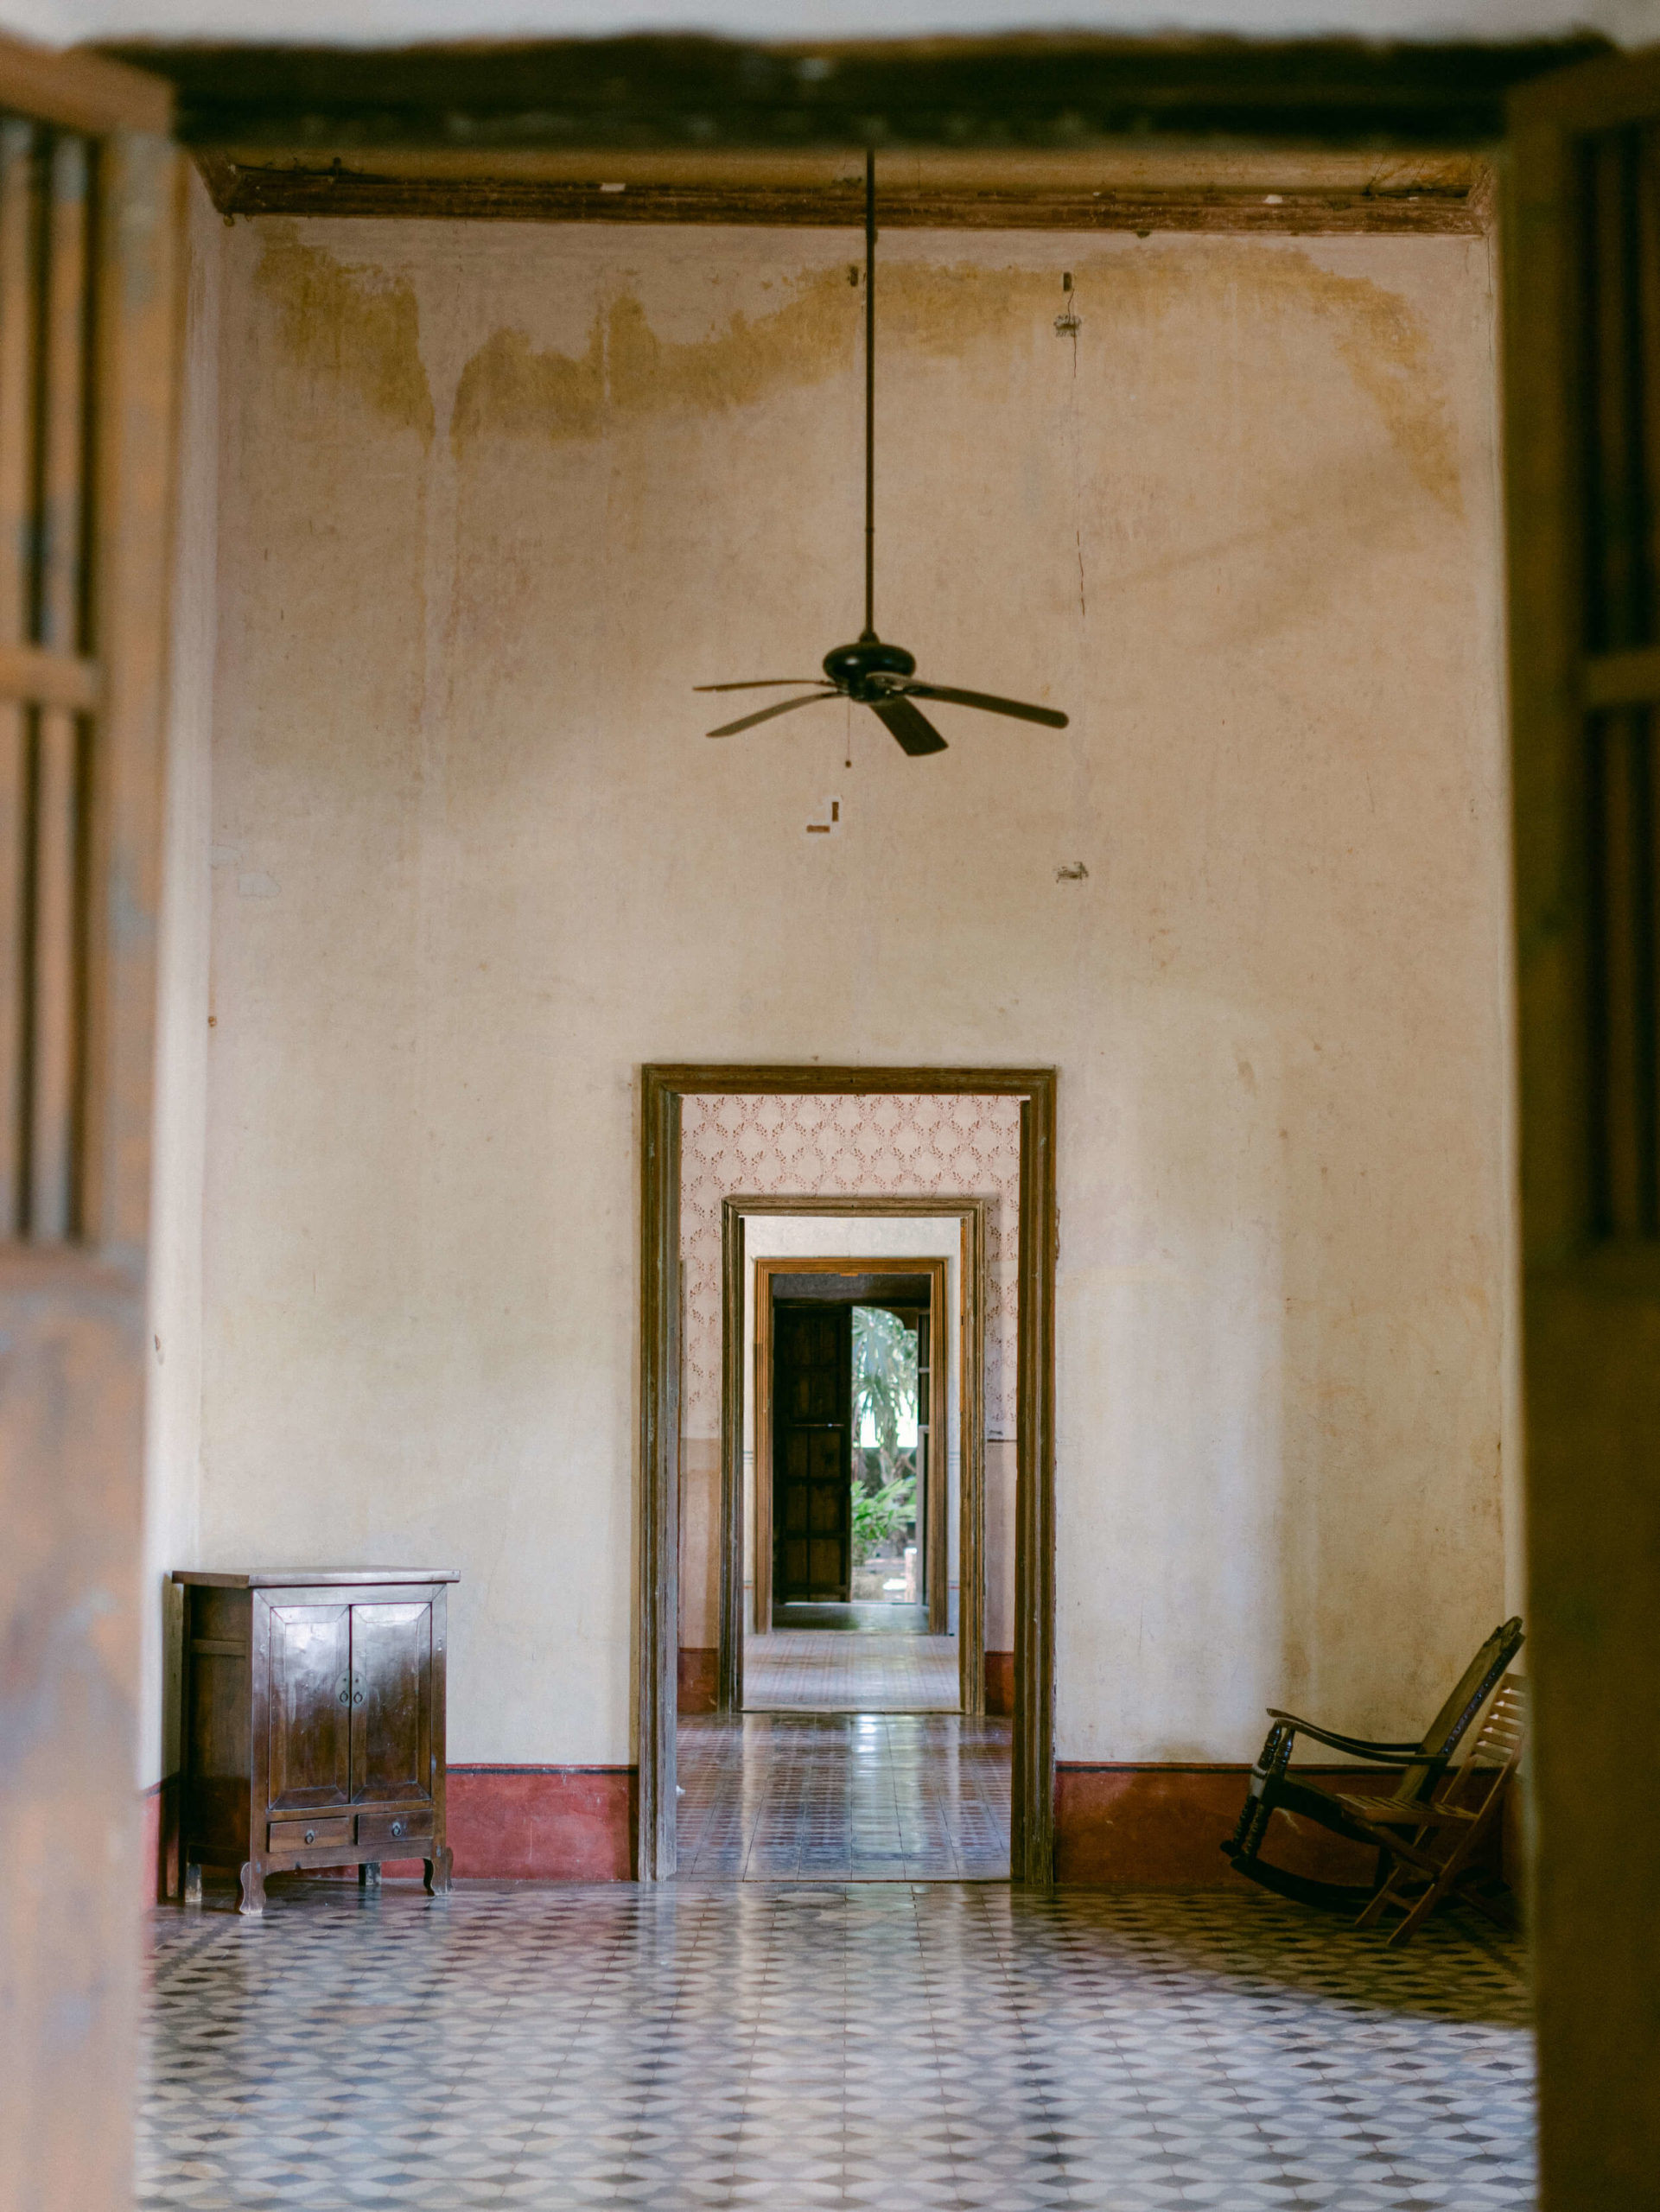 Room in the historical hacienda wedding venue